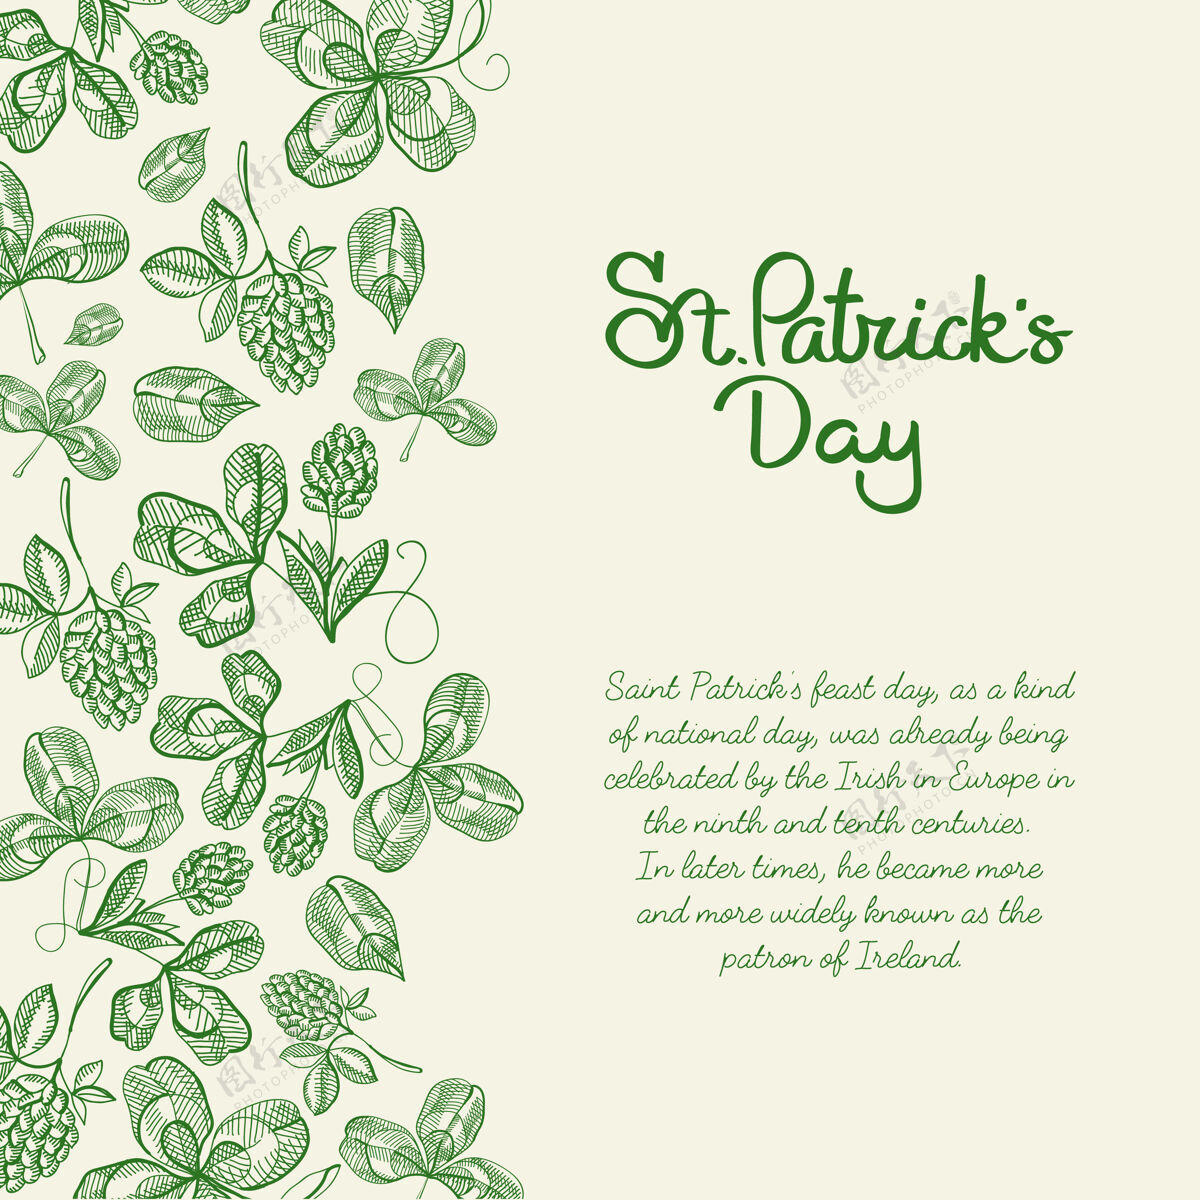 幸运单调的装饰设计素描卡 手绘有关于圣帕特里克日的文字 右侧有啤酒花嫩枝和三叶草花卉幸运素描